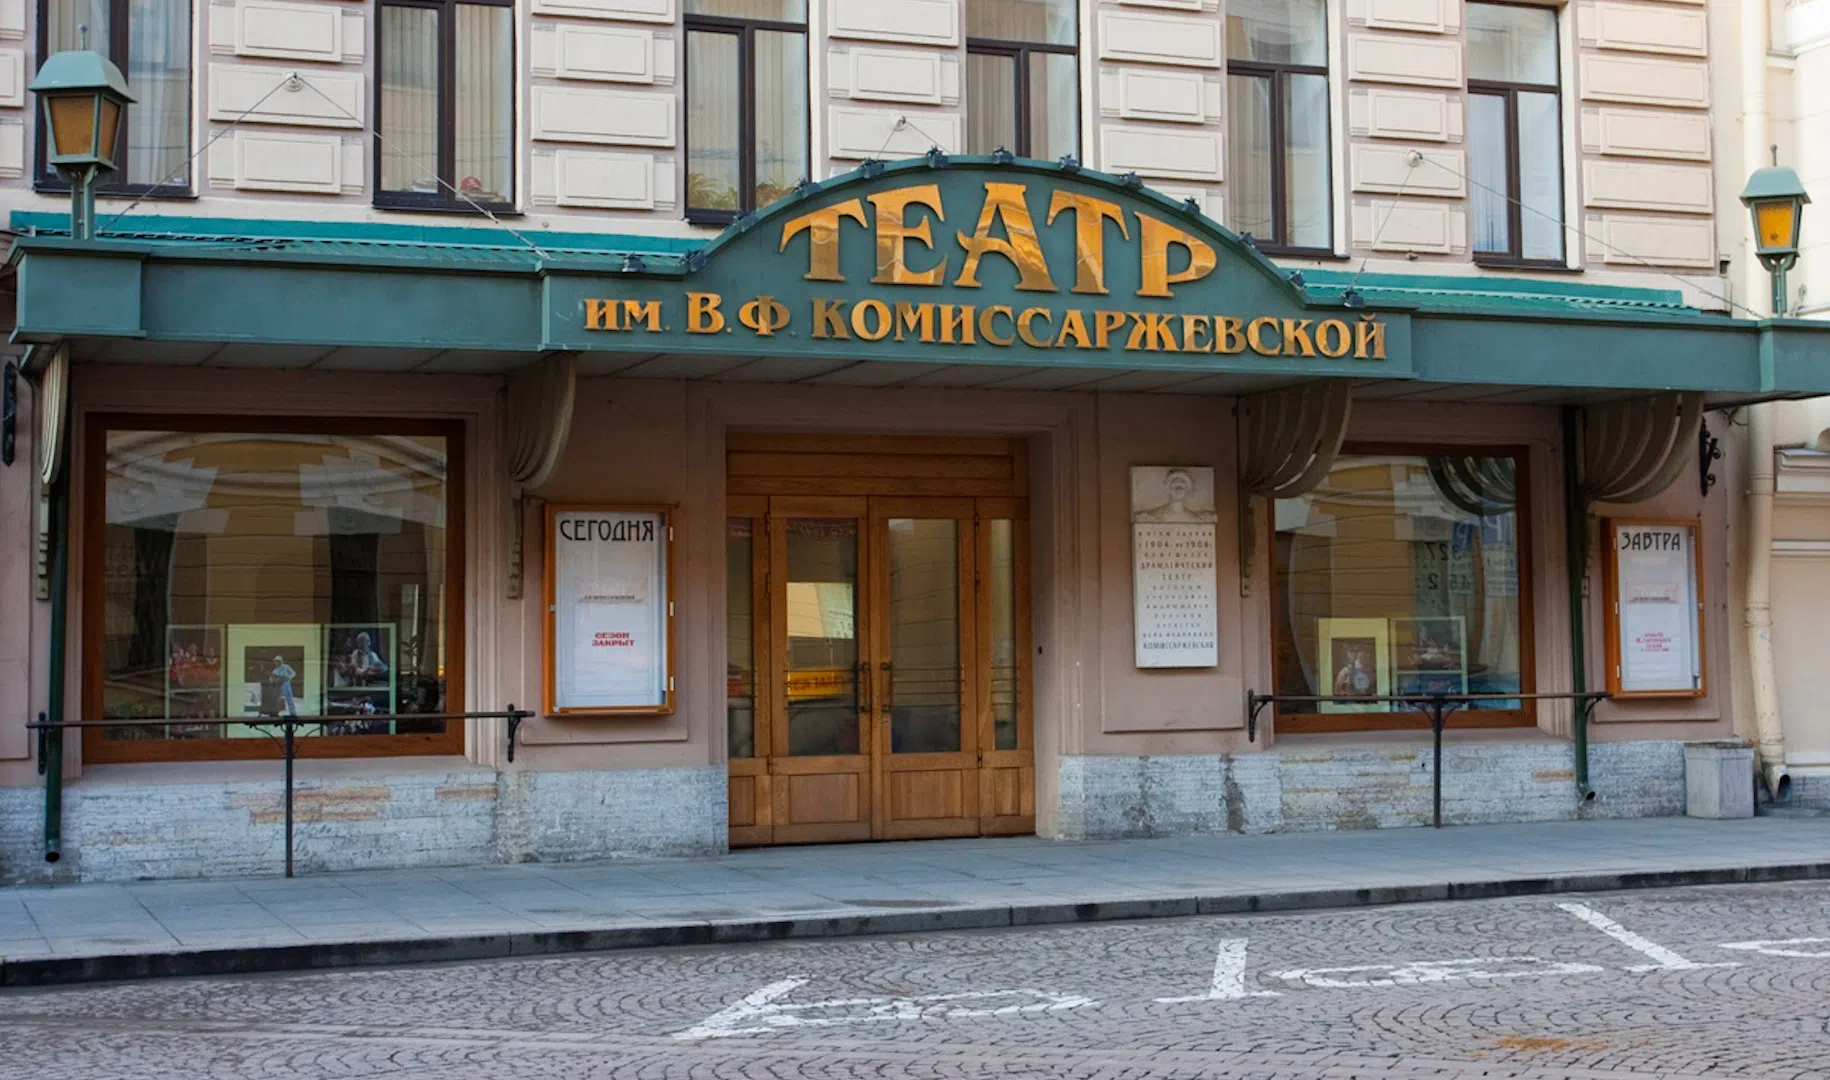 Театр имени В.Ф. Комиссаржевской ждёт зрителей в новом 81-ом сезоне в сентябре